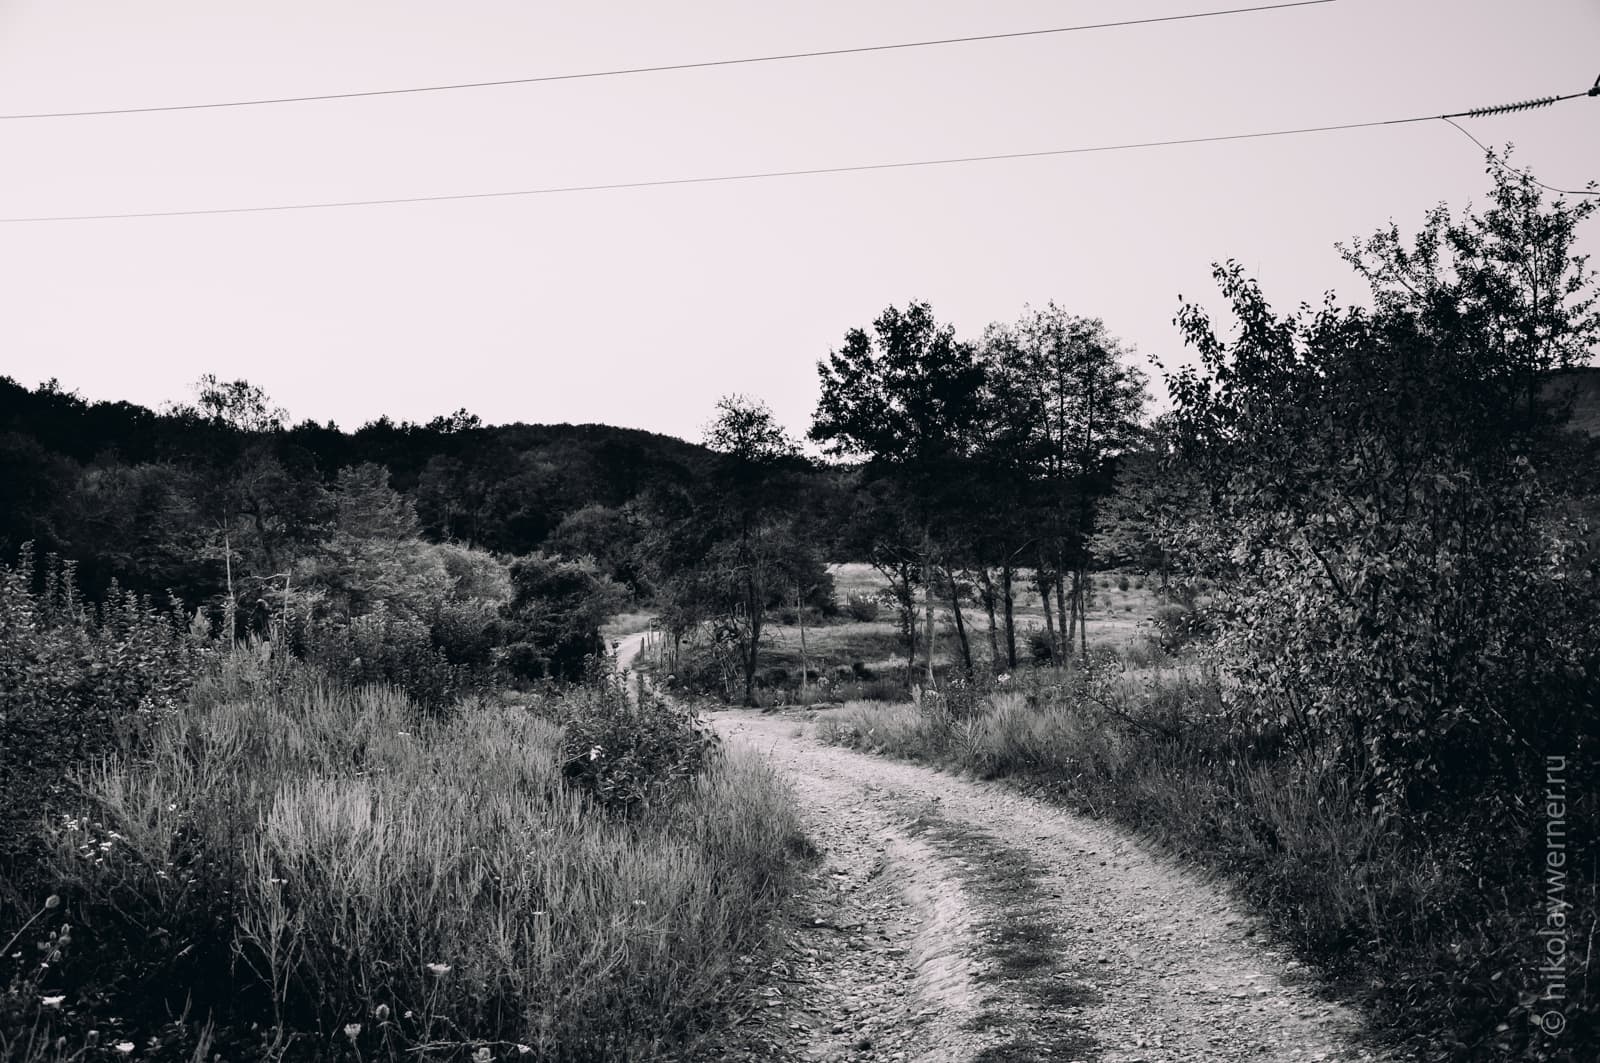 Чёрно-белый кадр. Грунтовая дорога вьётся сквозь высокую траву, вокруг стоят редкие деревья, впереди укрытый лесом хребет, почти чёрный на фото